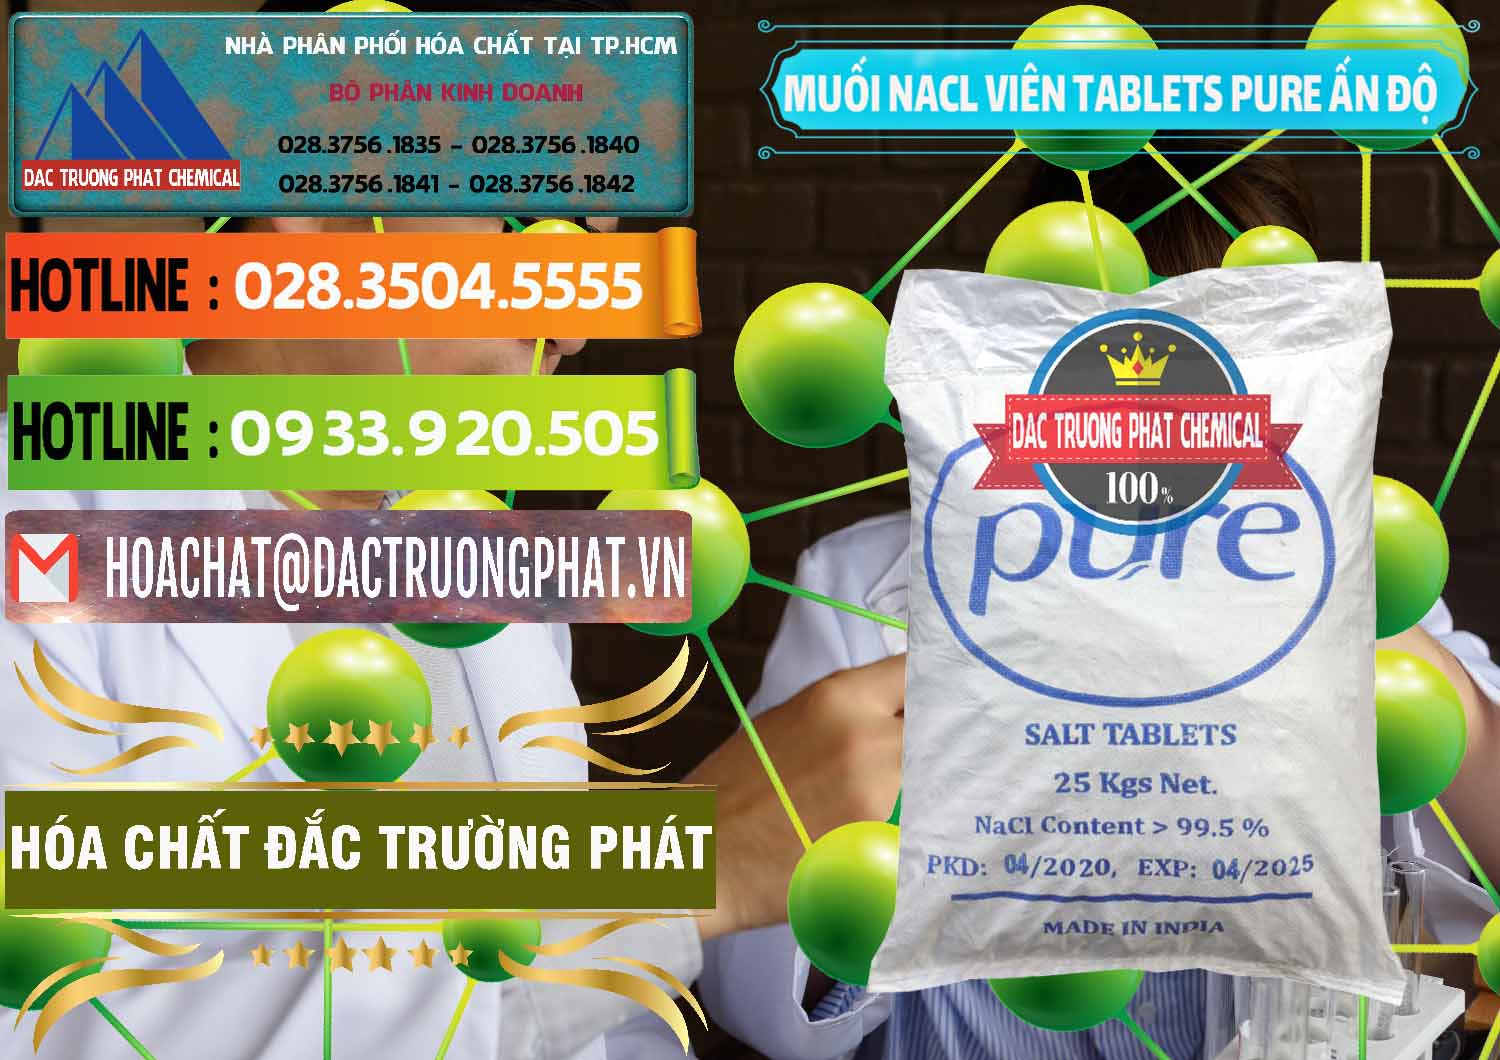 Chuyên kinh doanh _ bán Muối NaCL – Sodium Chloride Dạng Viên Tablets Pure Ấn Độ India - 0294 - Công ty chuyên kinh doanh & phân phối hóa chất tại TP.HCM - cungcaphoachat.com.vn